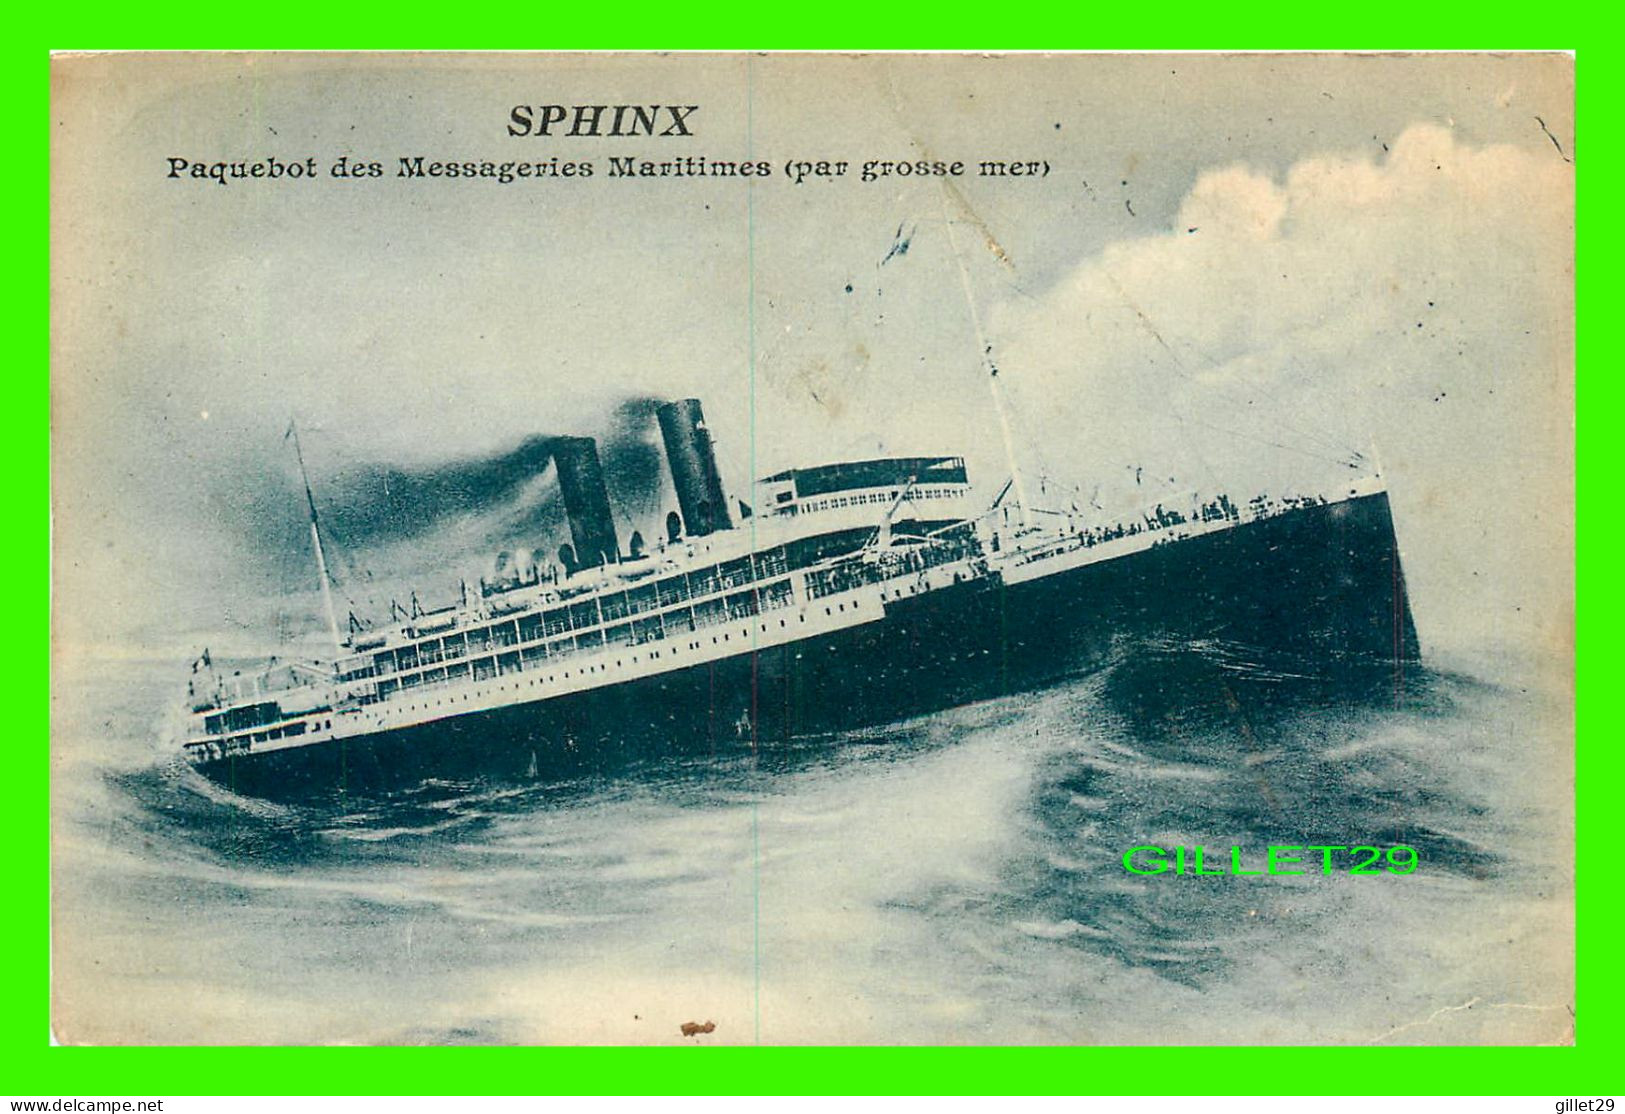 SHIP, BATEAU - " SPHINX " PAQUEBOT DES MESSAGERIES MARITIMES PAR GROSSE MER - BOURELLY, PHOTO-ÉDITEUR - - Steamers